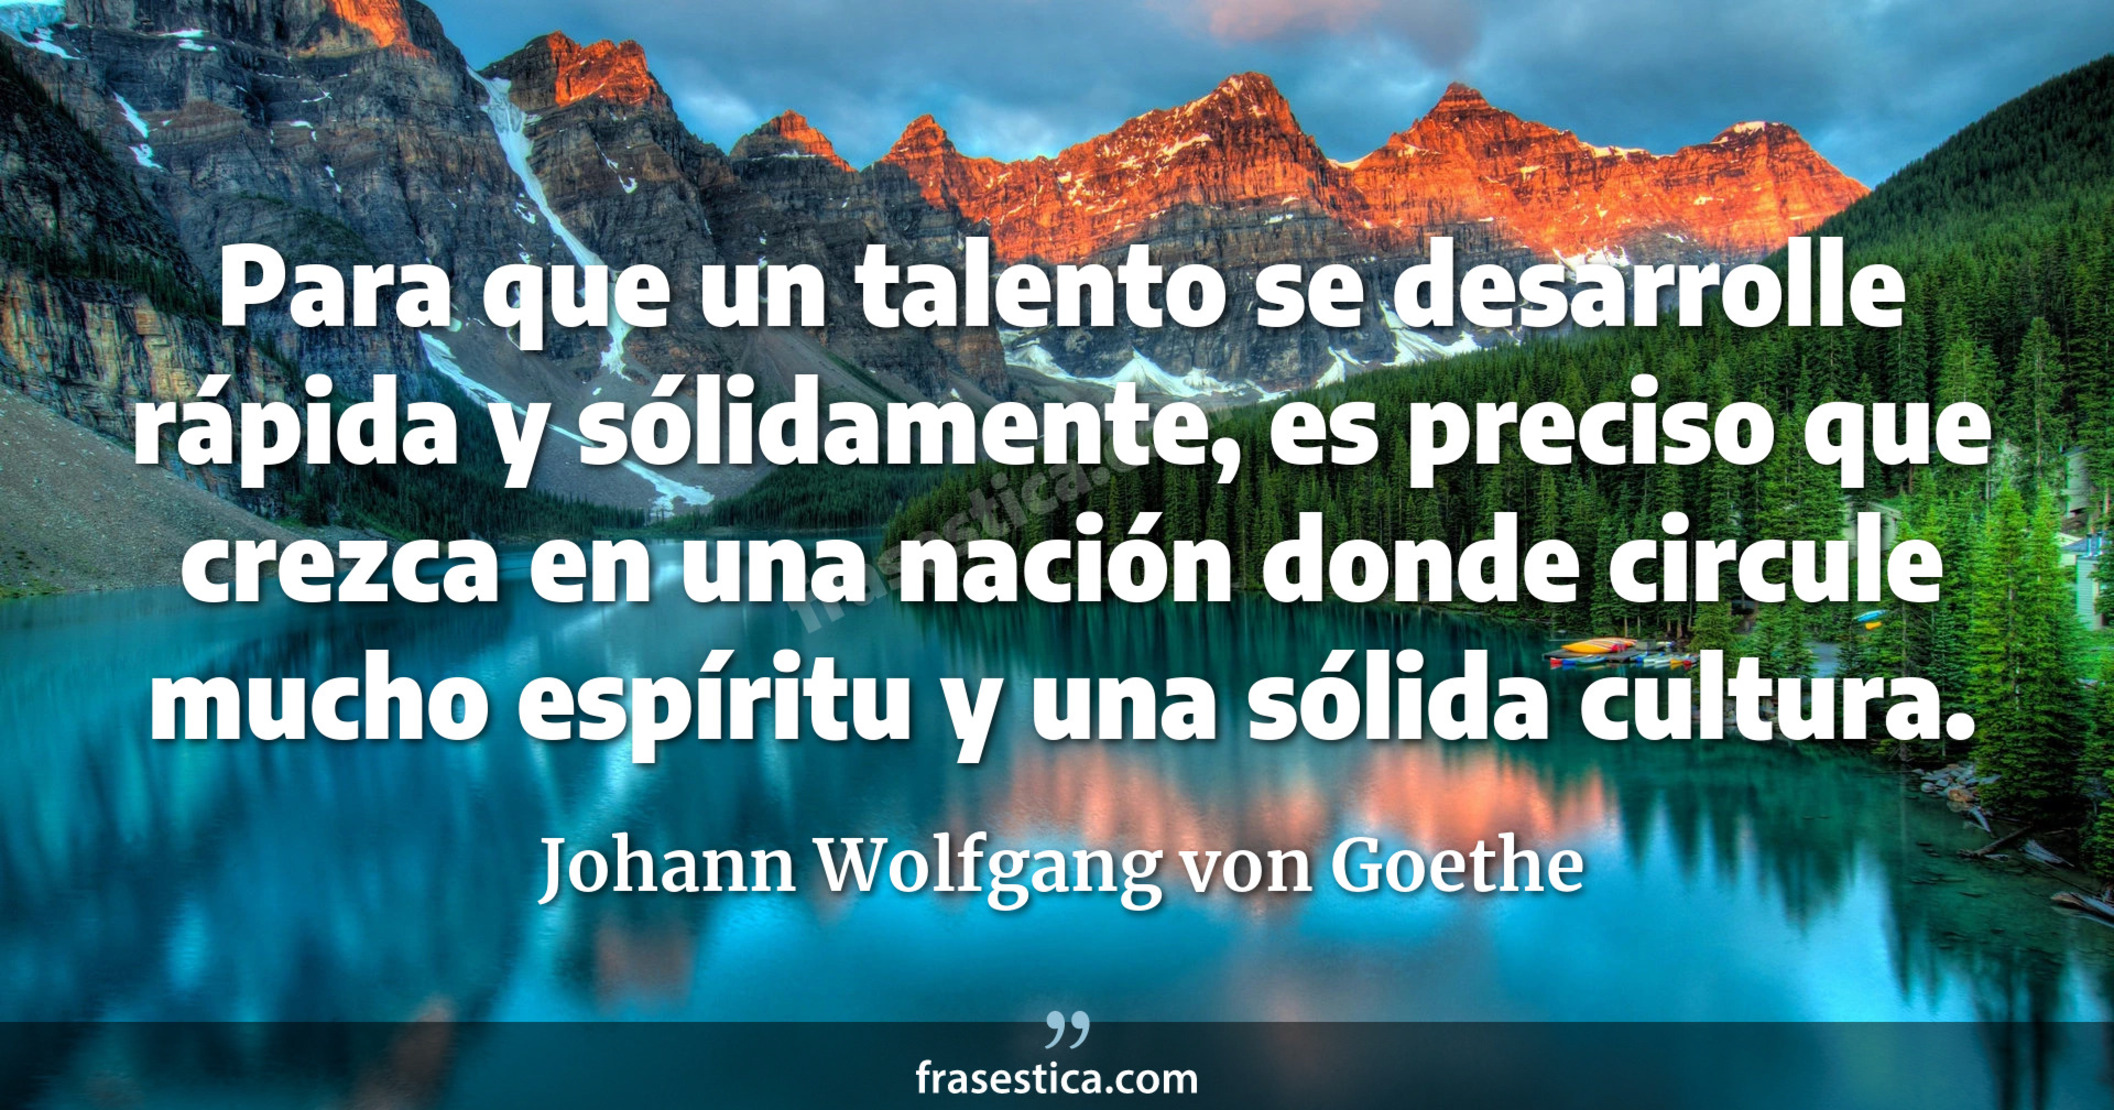 Para que un talento se desarrolle rápida y sólidamente, es preciso que crezca en una nación donde circule mucho espíritu y una sólida cultura. - Johann Wolfgang von Goethe